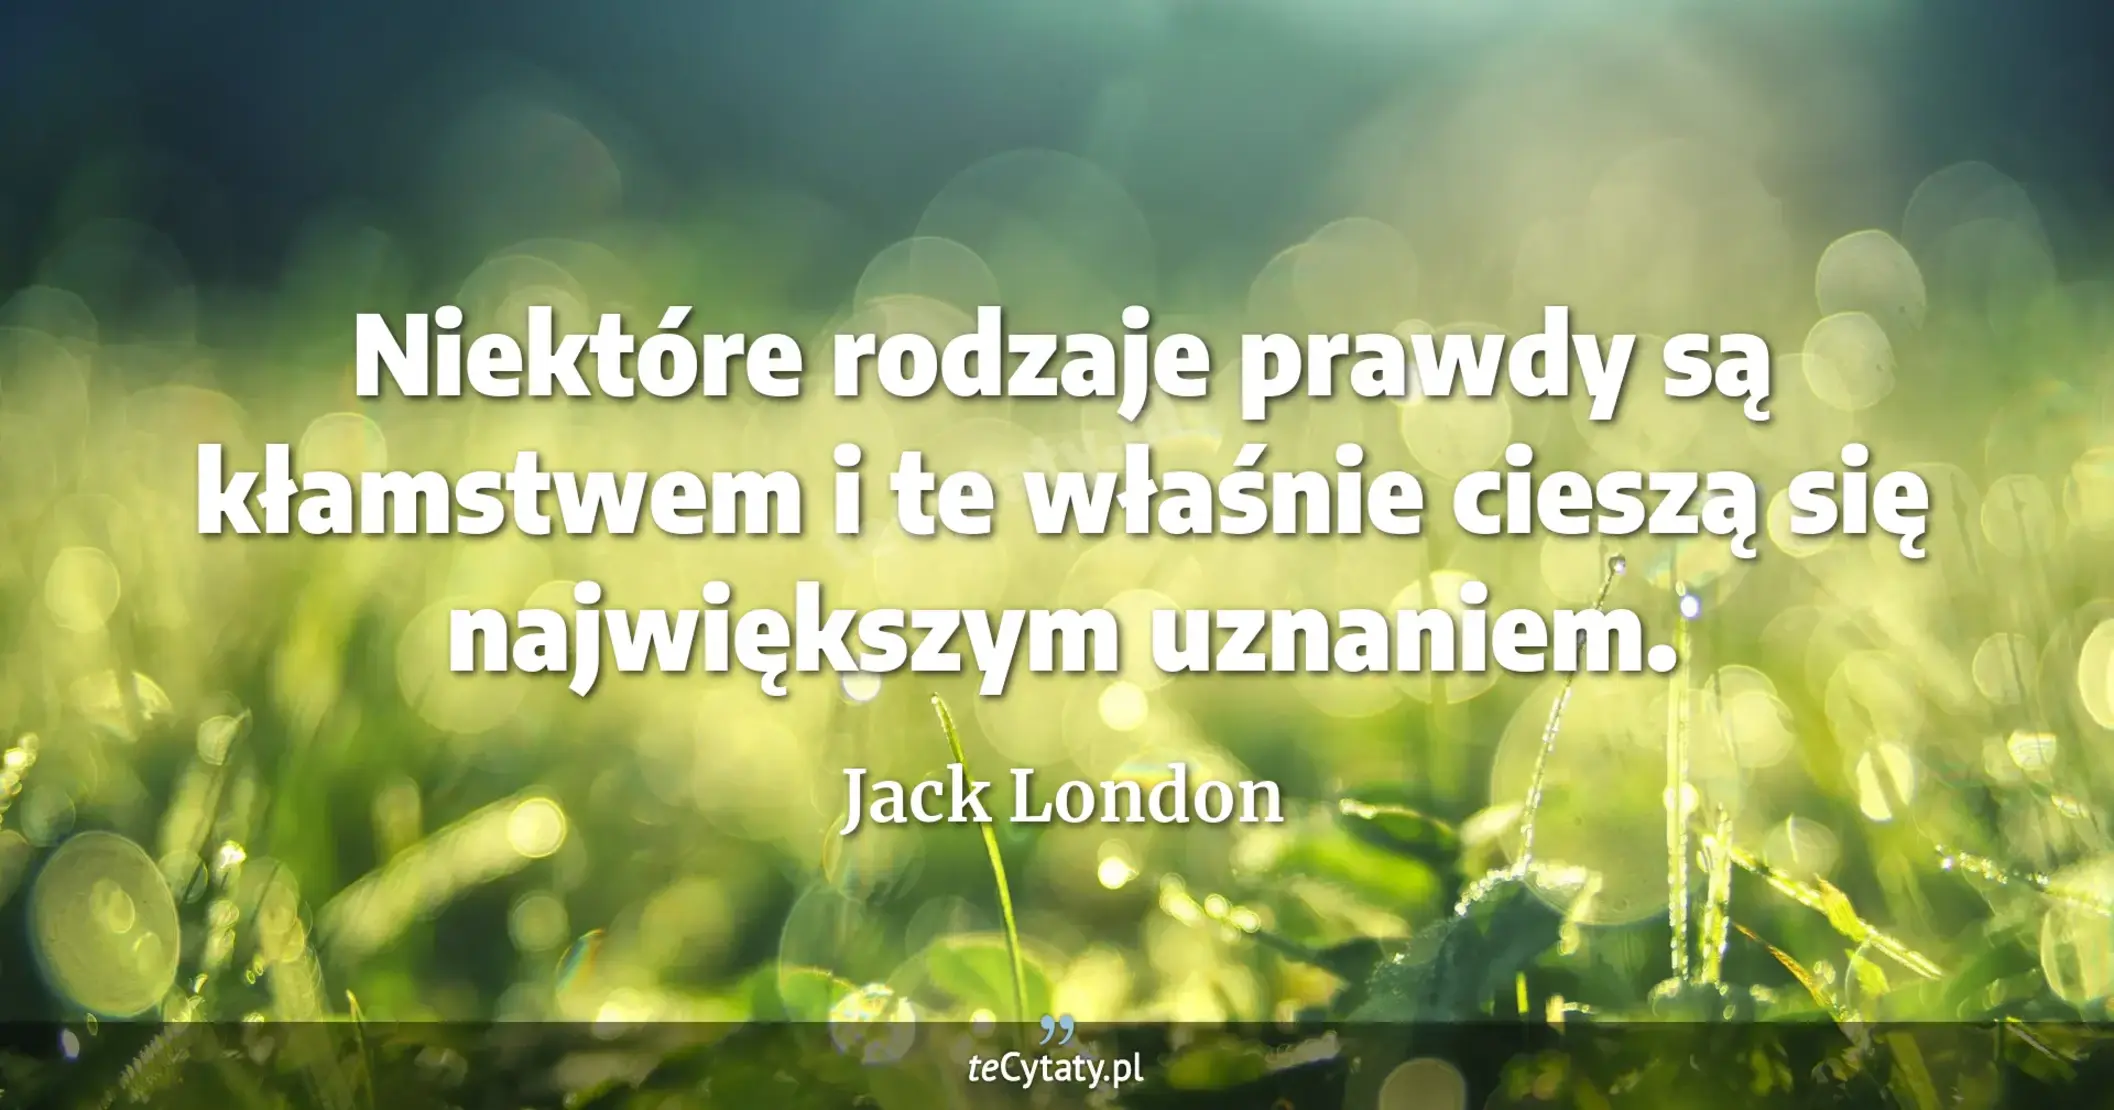 Niektóre rodzaje prawdy są kłamstwem i te właśnie cieszą się największym uznaniem. - Jack London